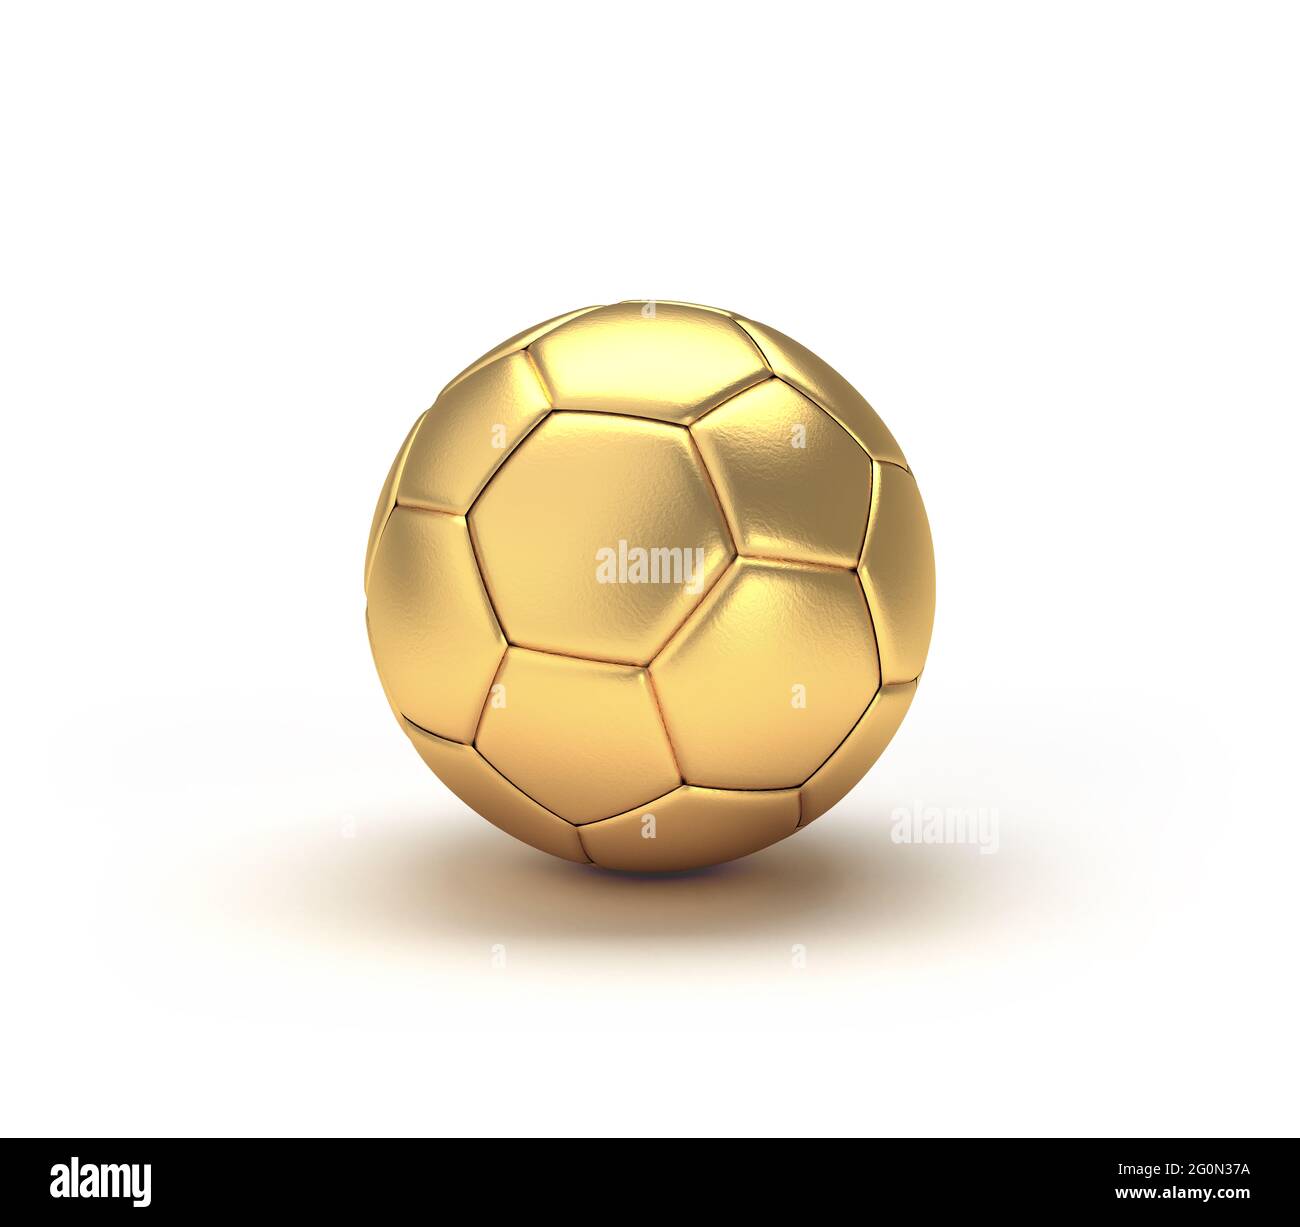 Ballon de football doré isolé sur fond blanc. Illustration 3D. Banque D'Images